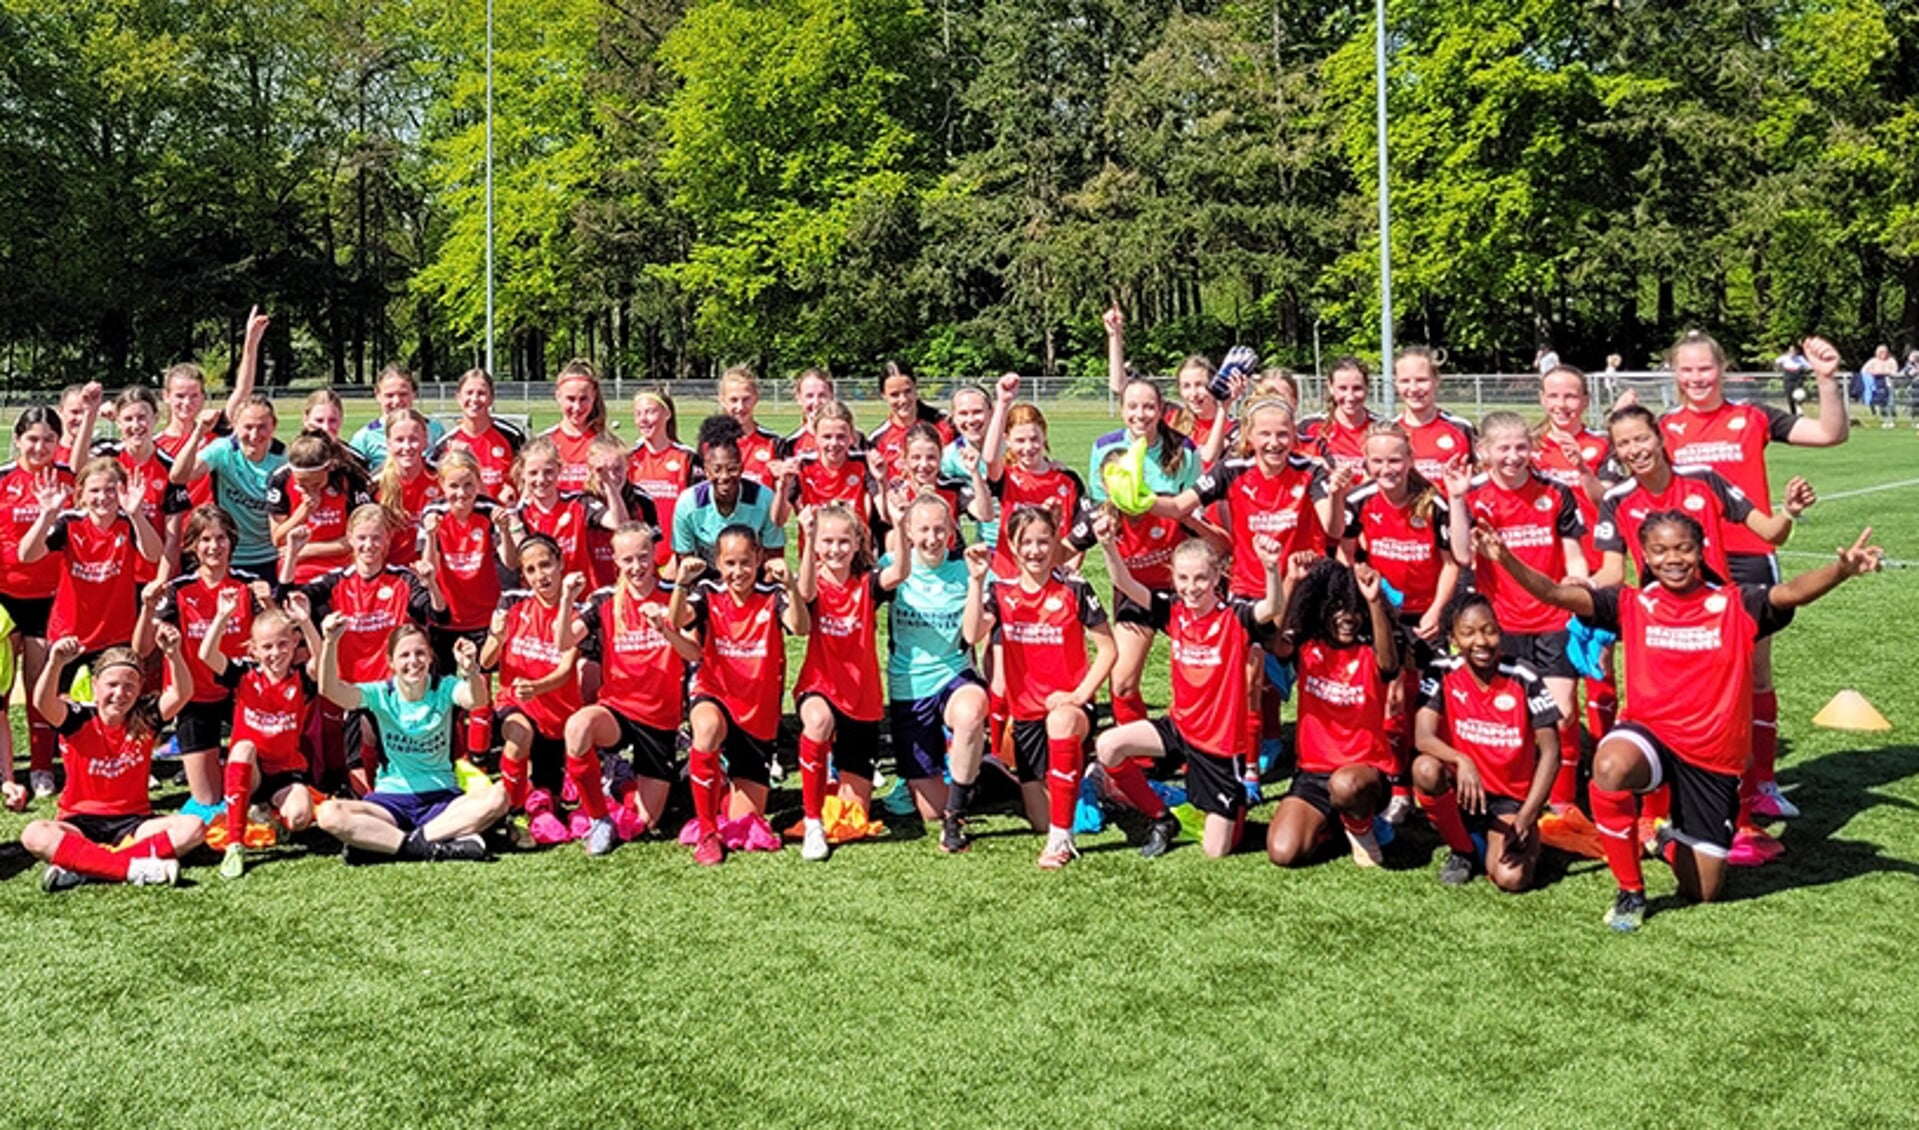 PSV Vrouwen organiseert samen met partner in3 tijdens de maand april diverse selectieavonden in de regio voor meiden in de leeftijd 10 tot en met 12 jaar. FOTO: In3.